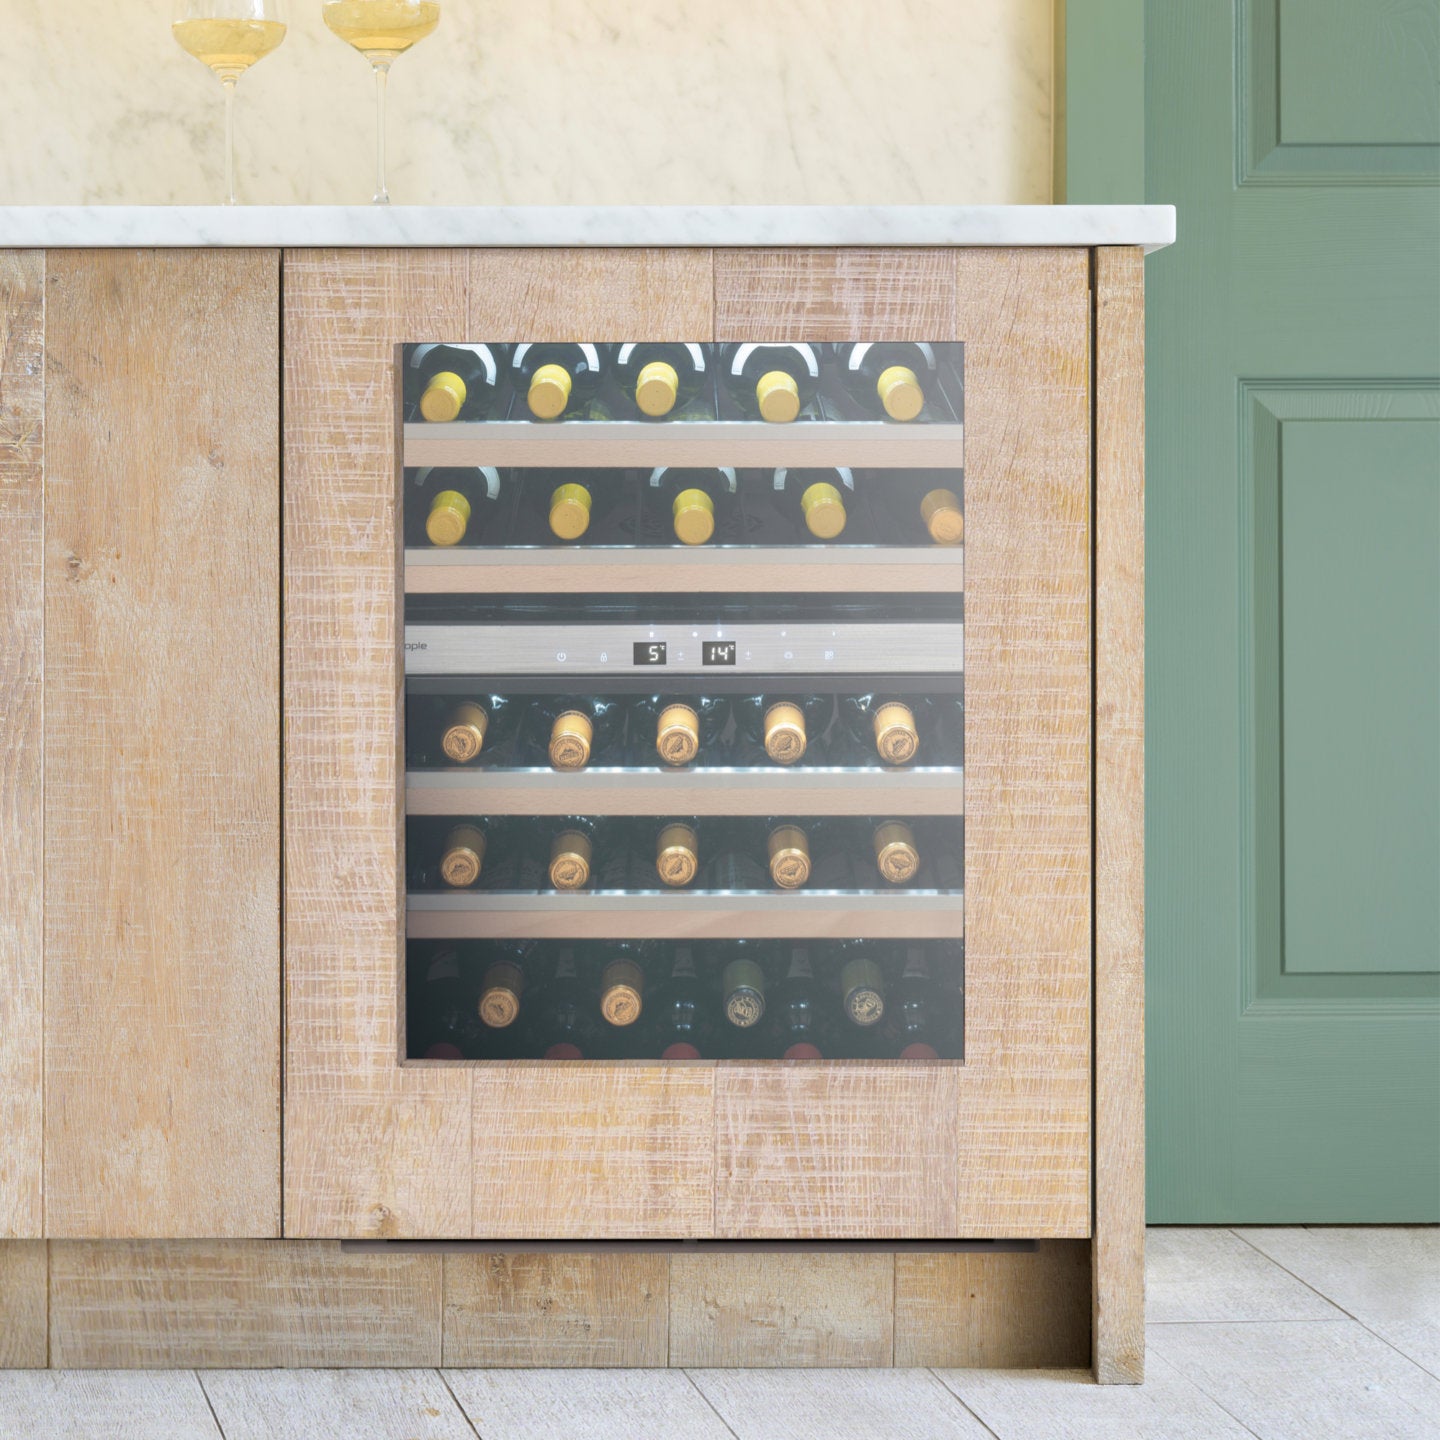 Do you really need a wine fridge?